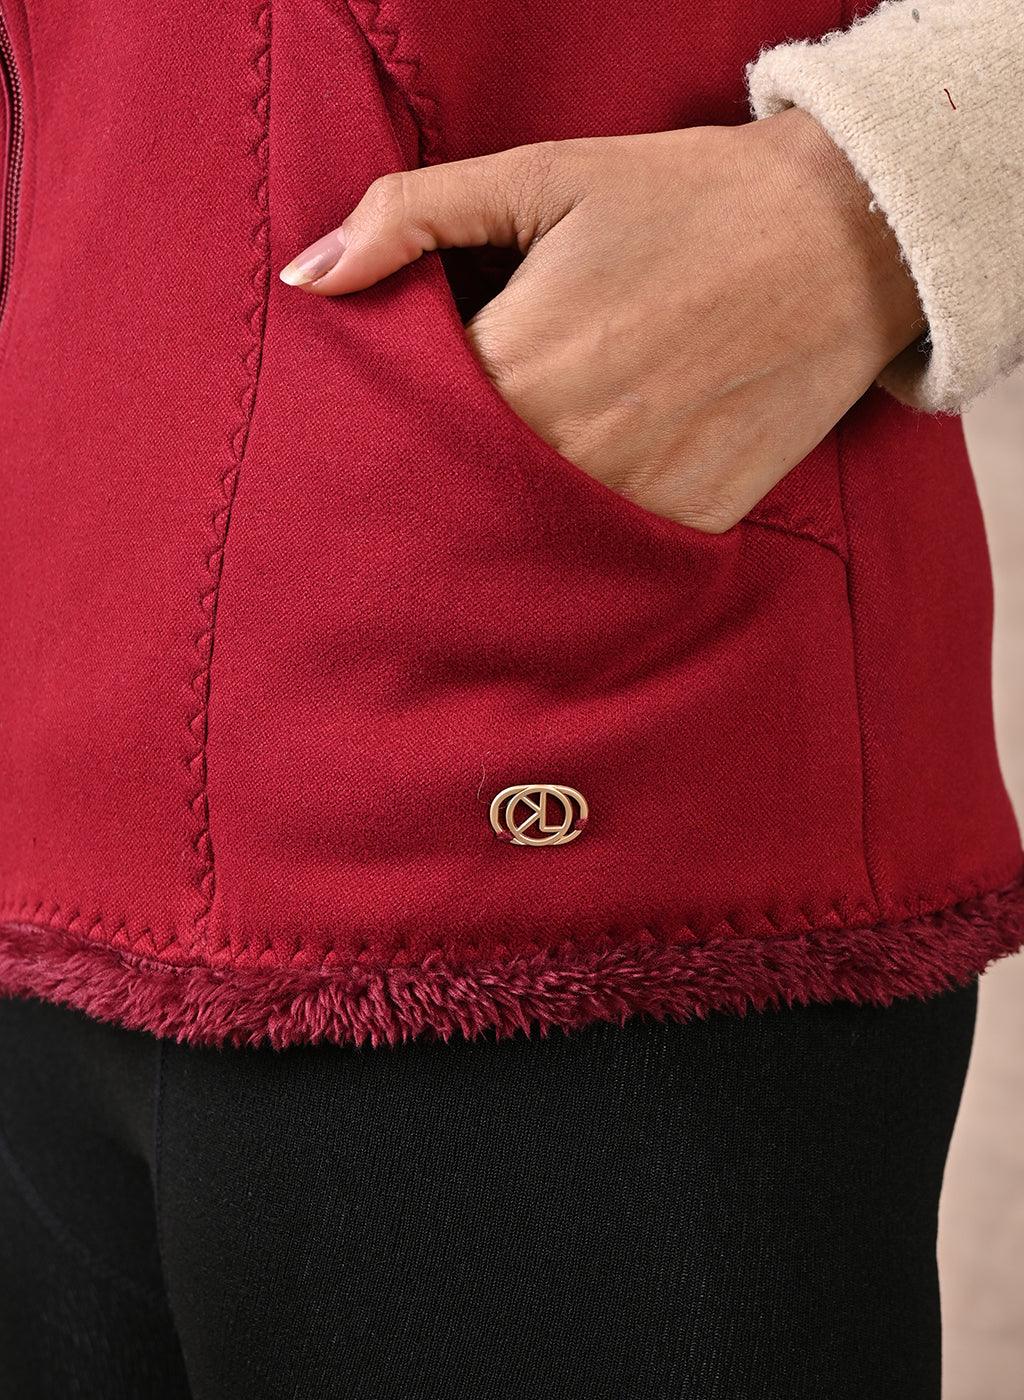 Red Sleeveless Jacket with Fur Detail - Lakshita